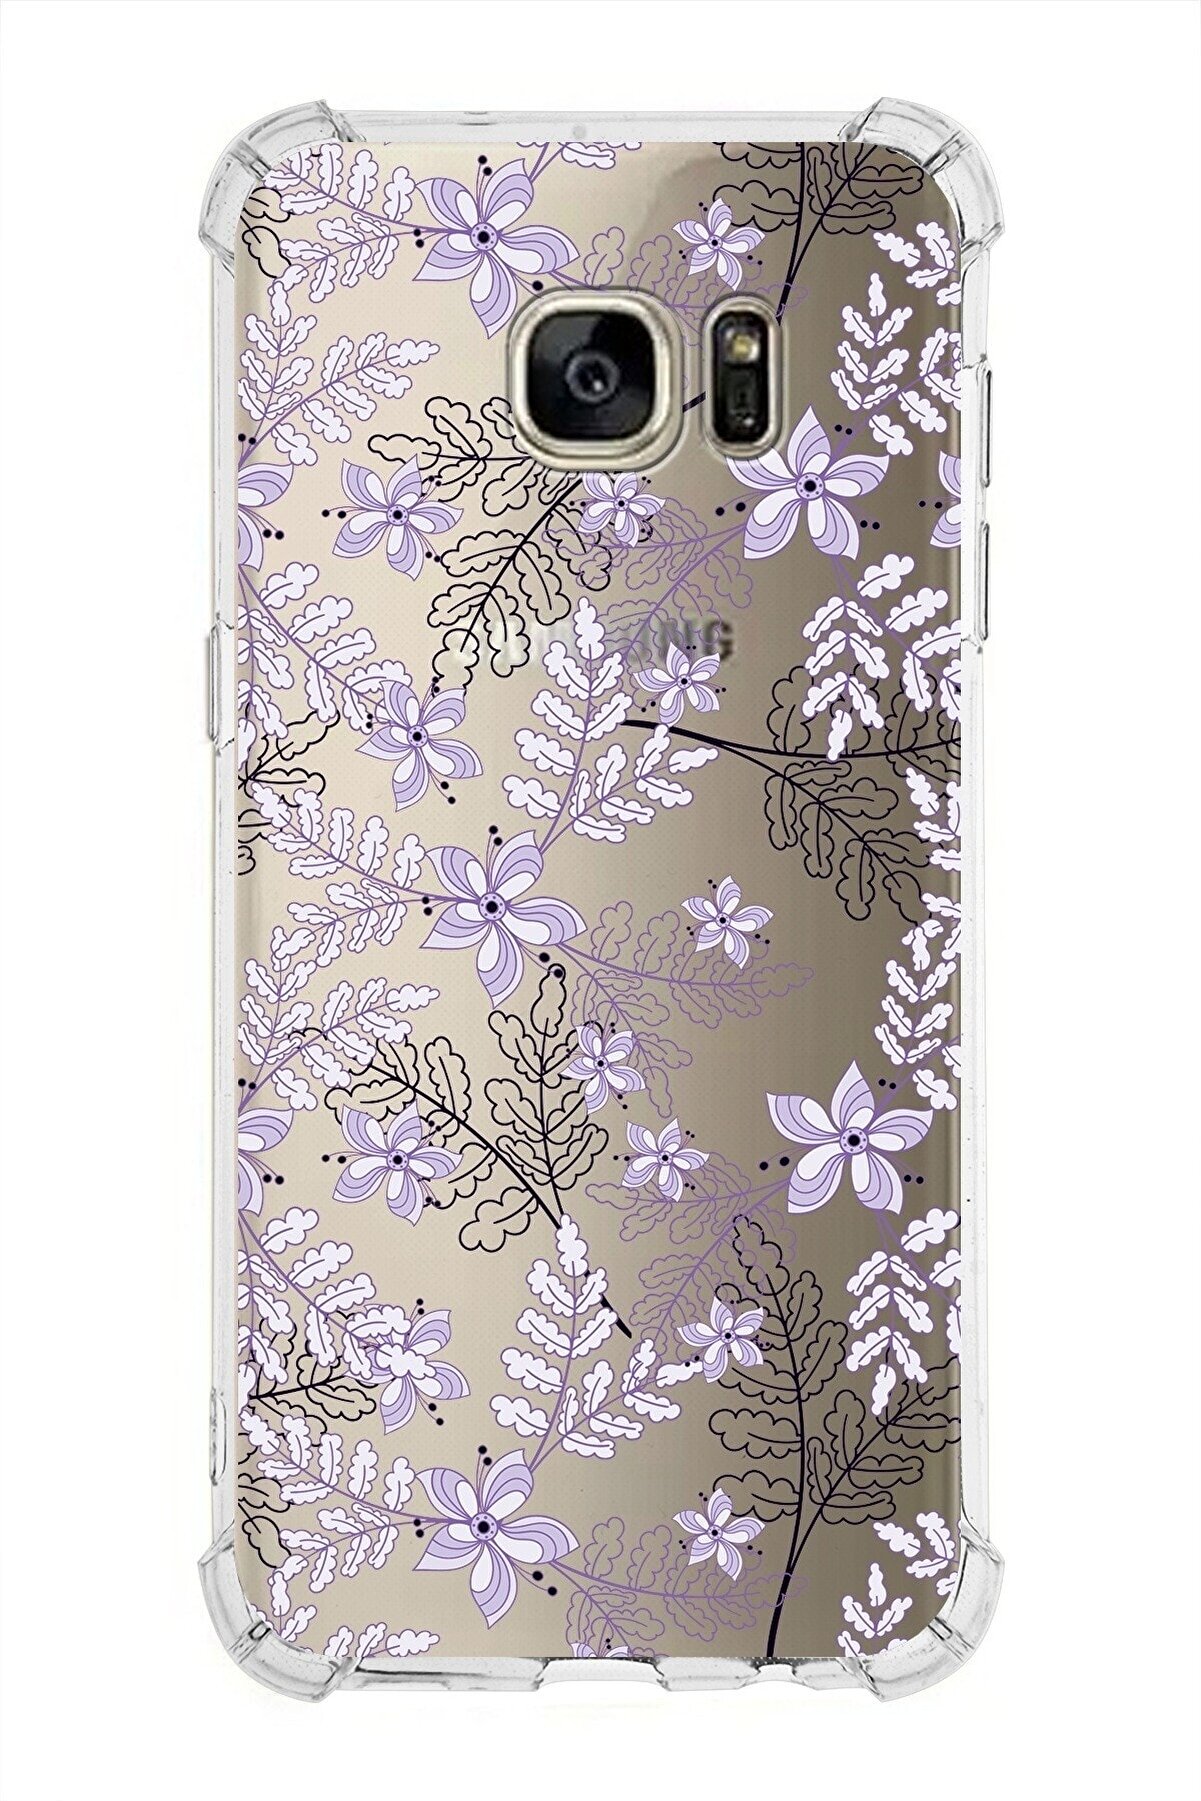 PrintiFy Samsung Galaxy S7 Edge Köşe Korumalı Antişok Kapak Floral Lila Tasarımlı Şeffaf Kılıf